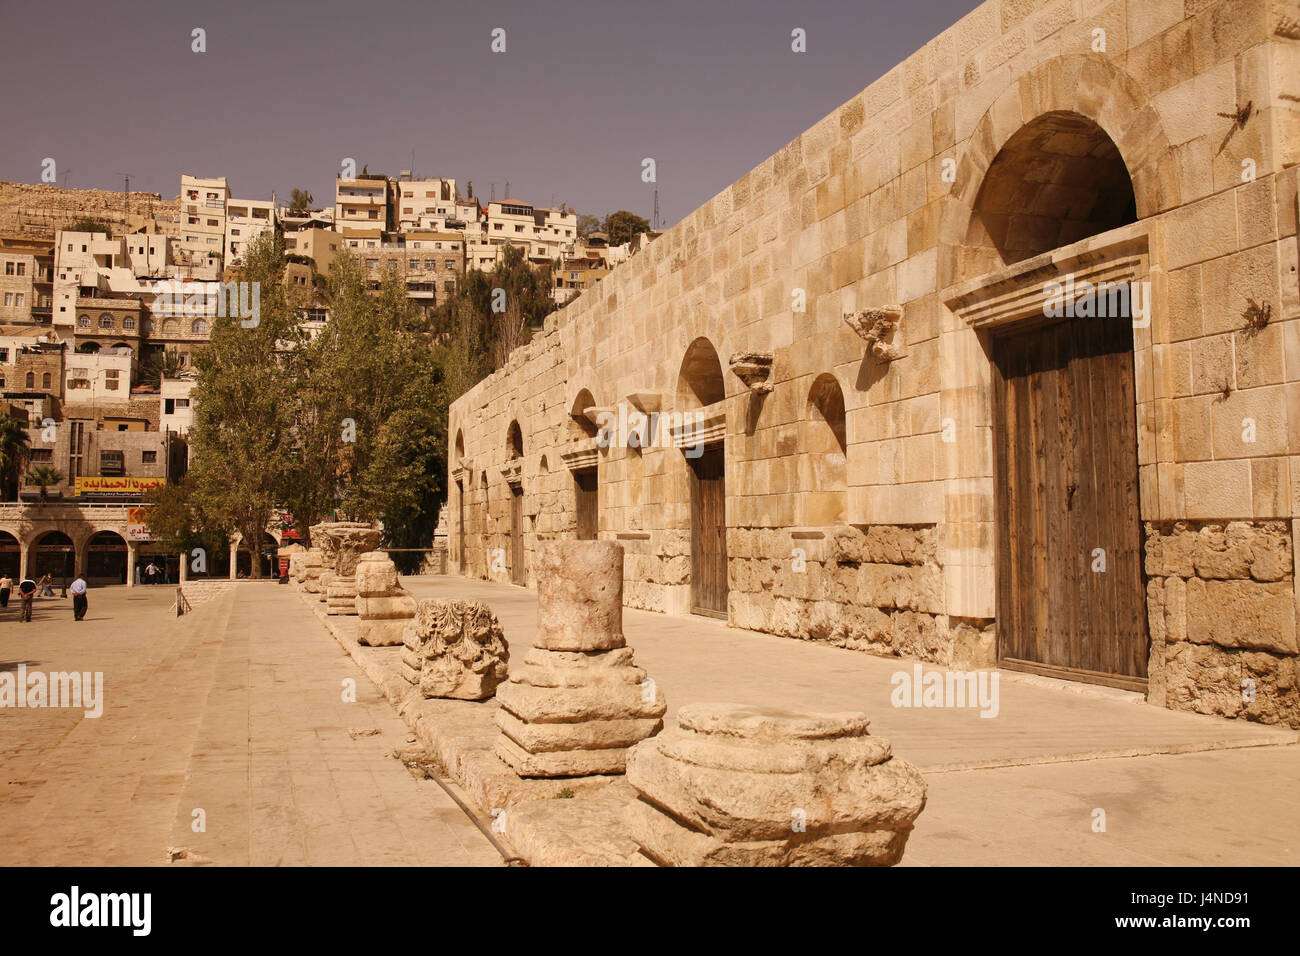 Le Moyen Orient, la Jordanie, Amman, paysage urbain, ruines, Banque D'Images